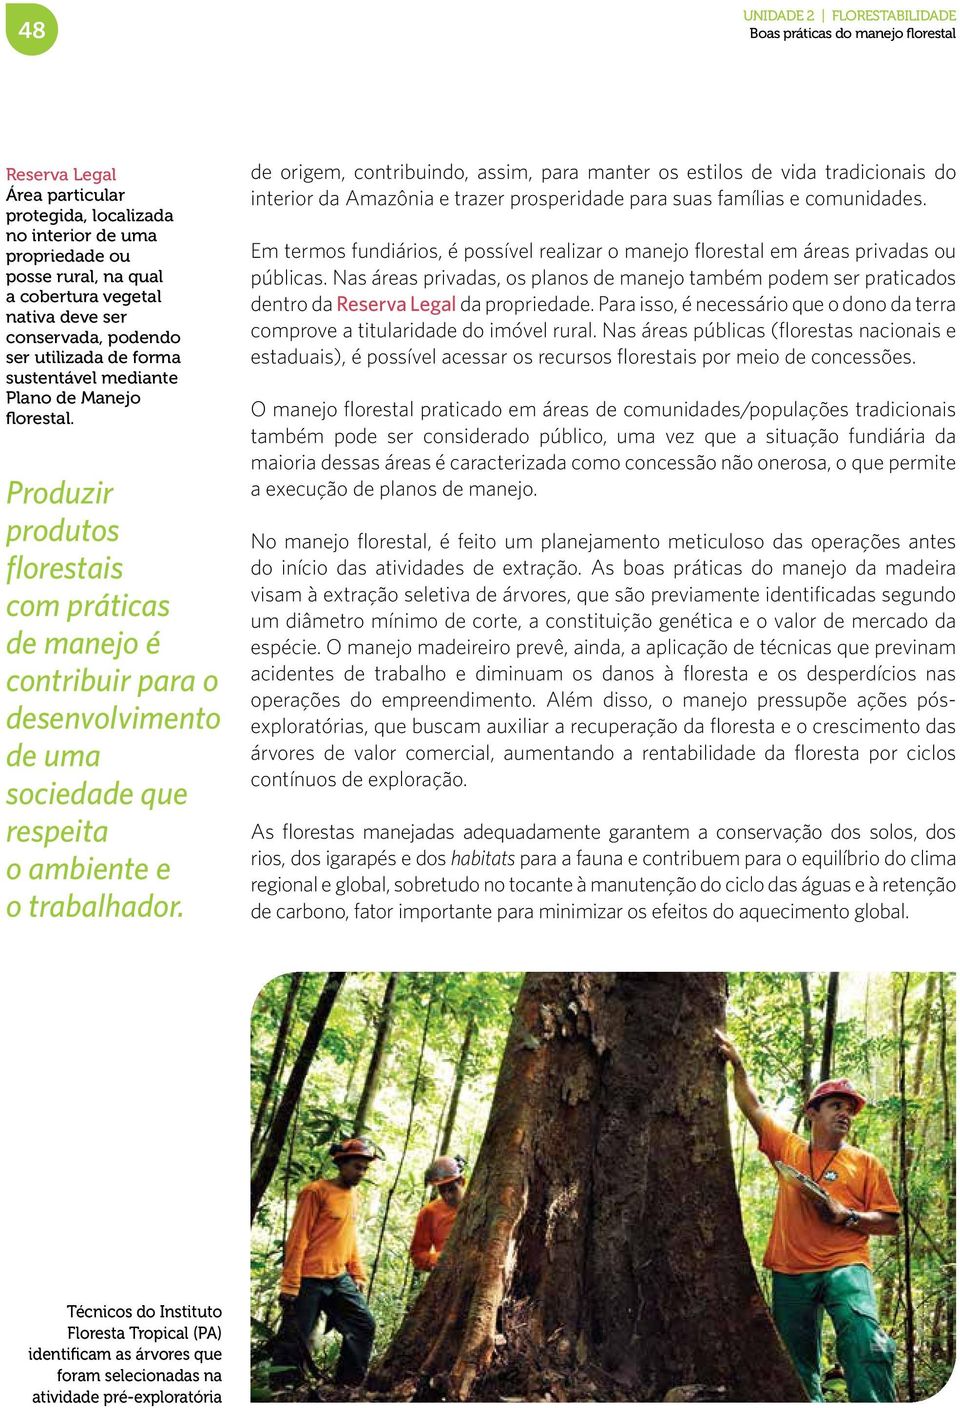 Produzir produtos florestais com práticas de manejo é contribuir para o desenvolvimento de uma sociedade que respeita o ambiente e o trabalhador.